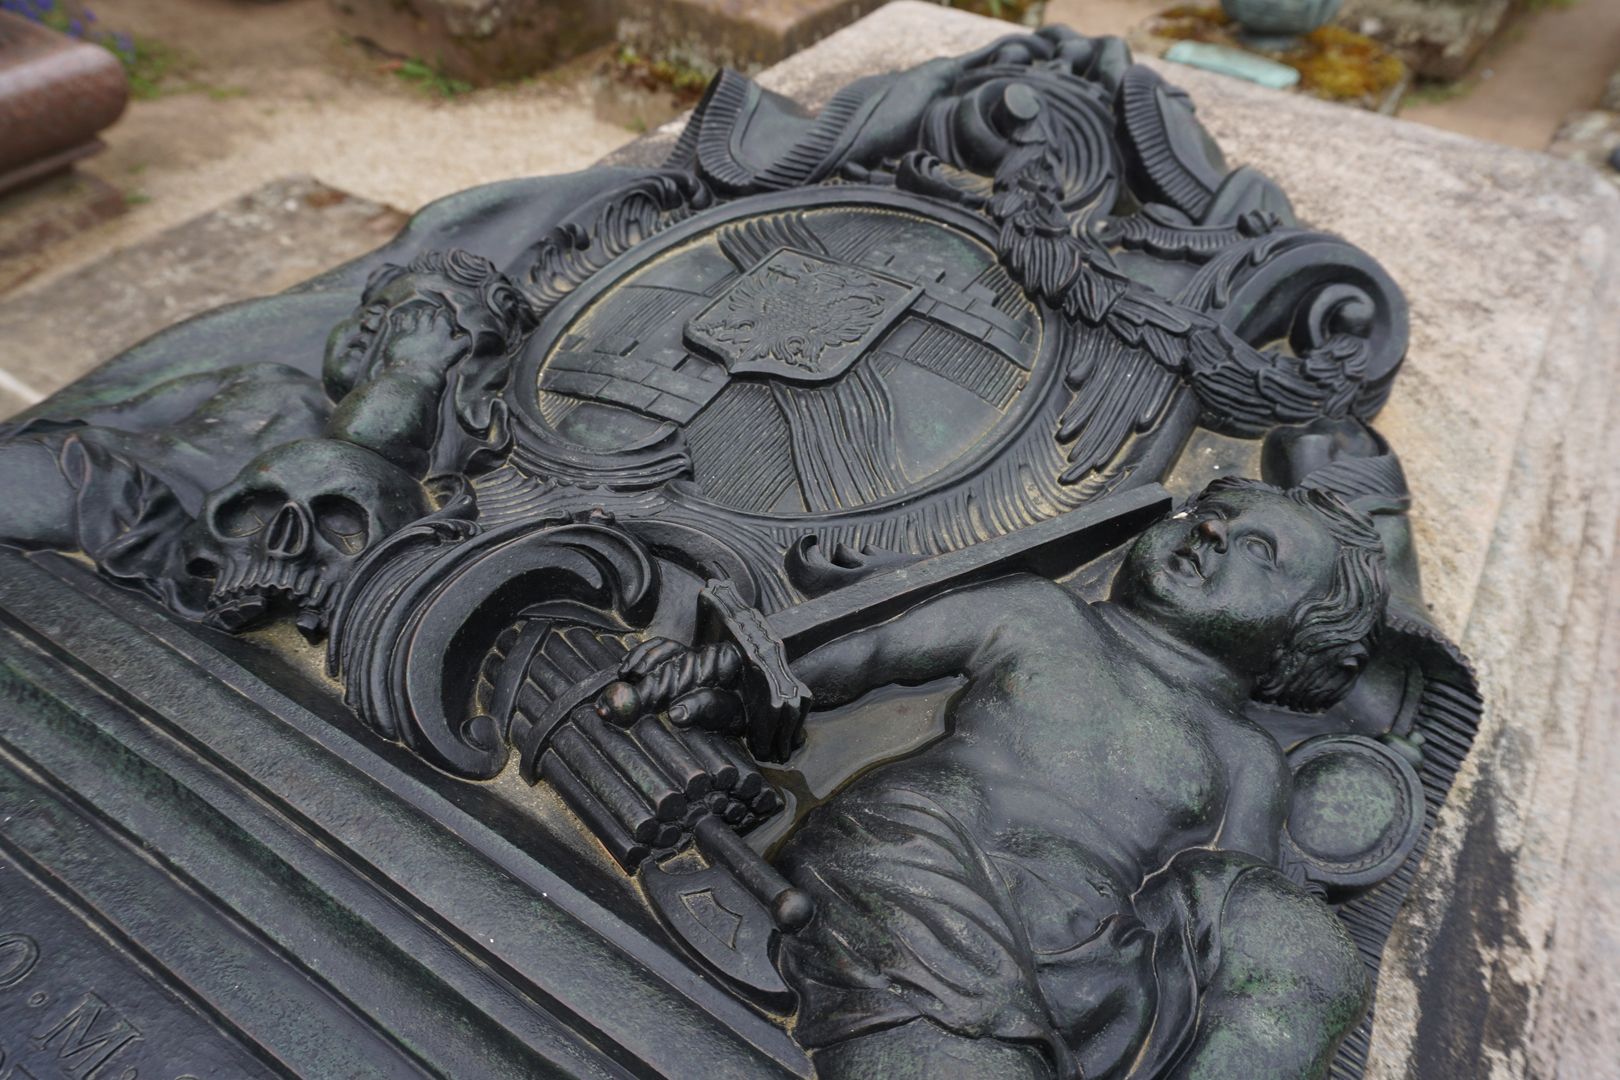 Grabstätte des Carl Friedrich Behaim Putti unterhalb des Wappens mit Totenschädel, Rutenbündel mit Beil (Fascis), Schwert und Spiegel